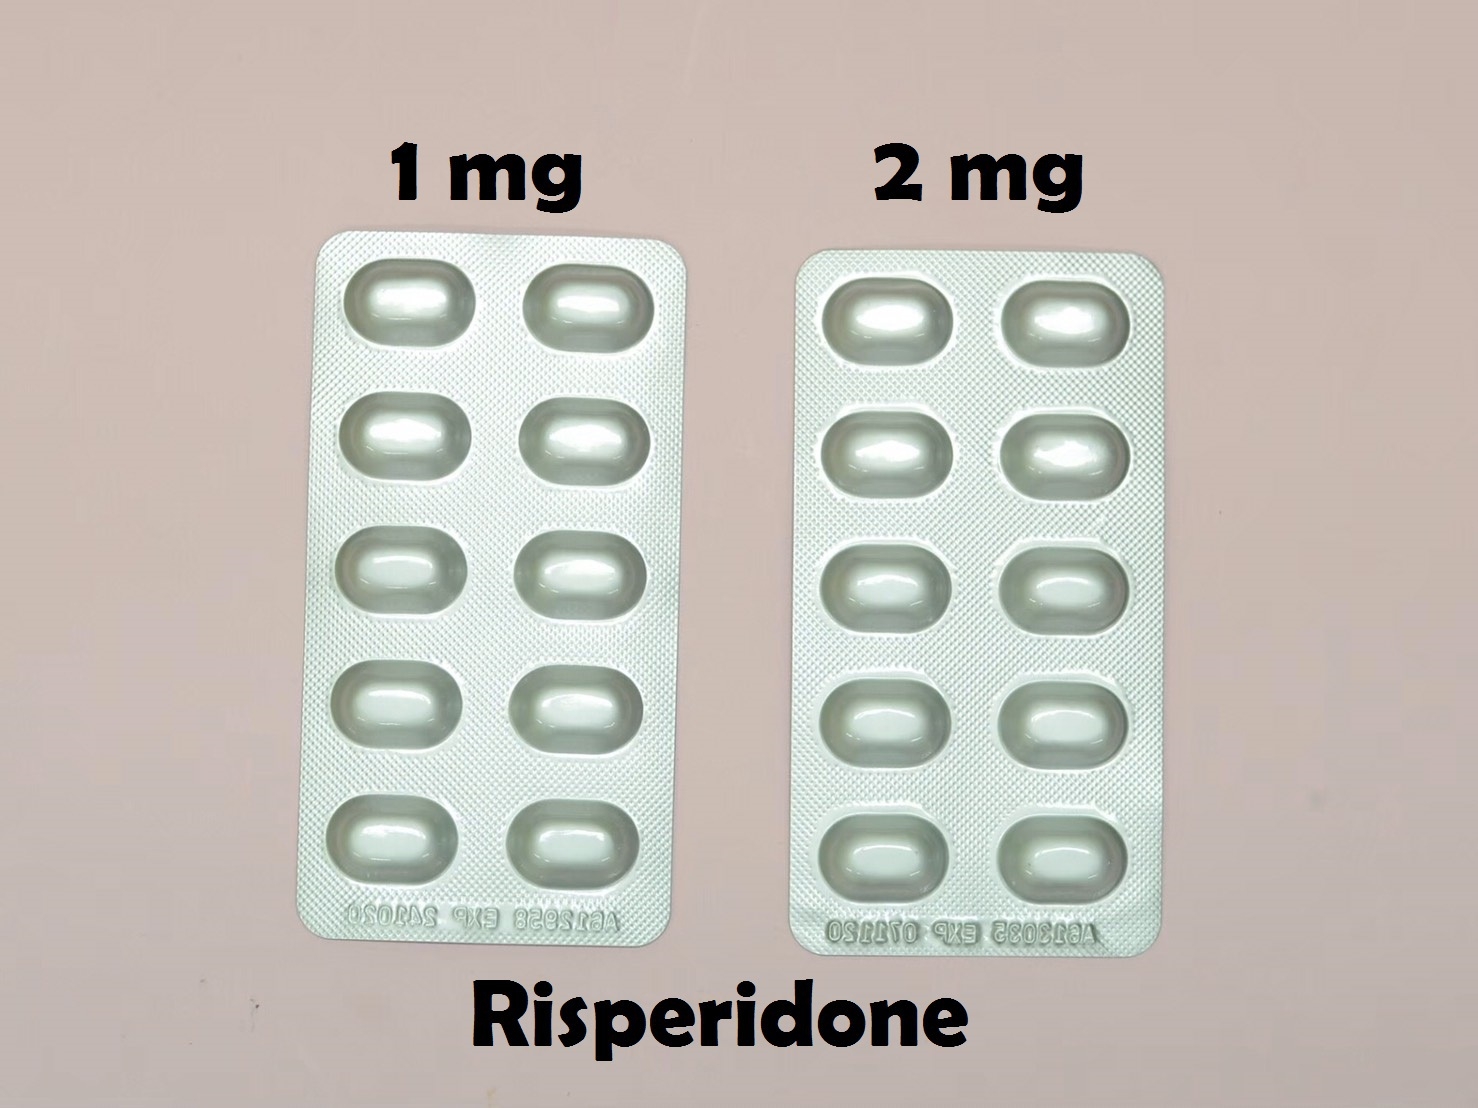 ยาที่มีหลายความแรง : Risperidone 1 mg  และ 2 mg